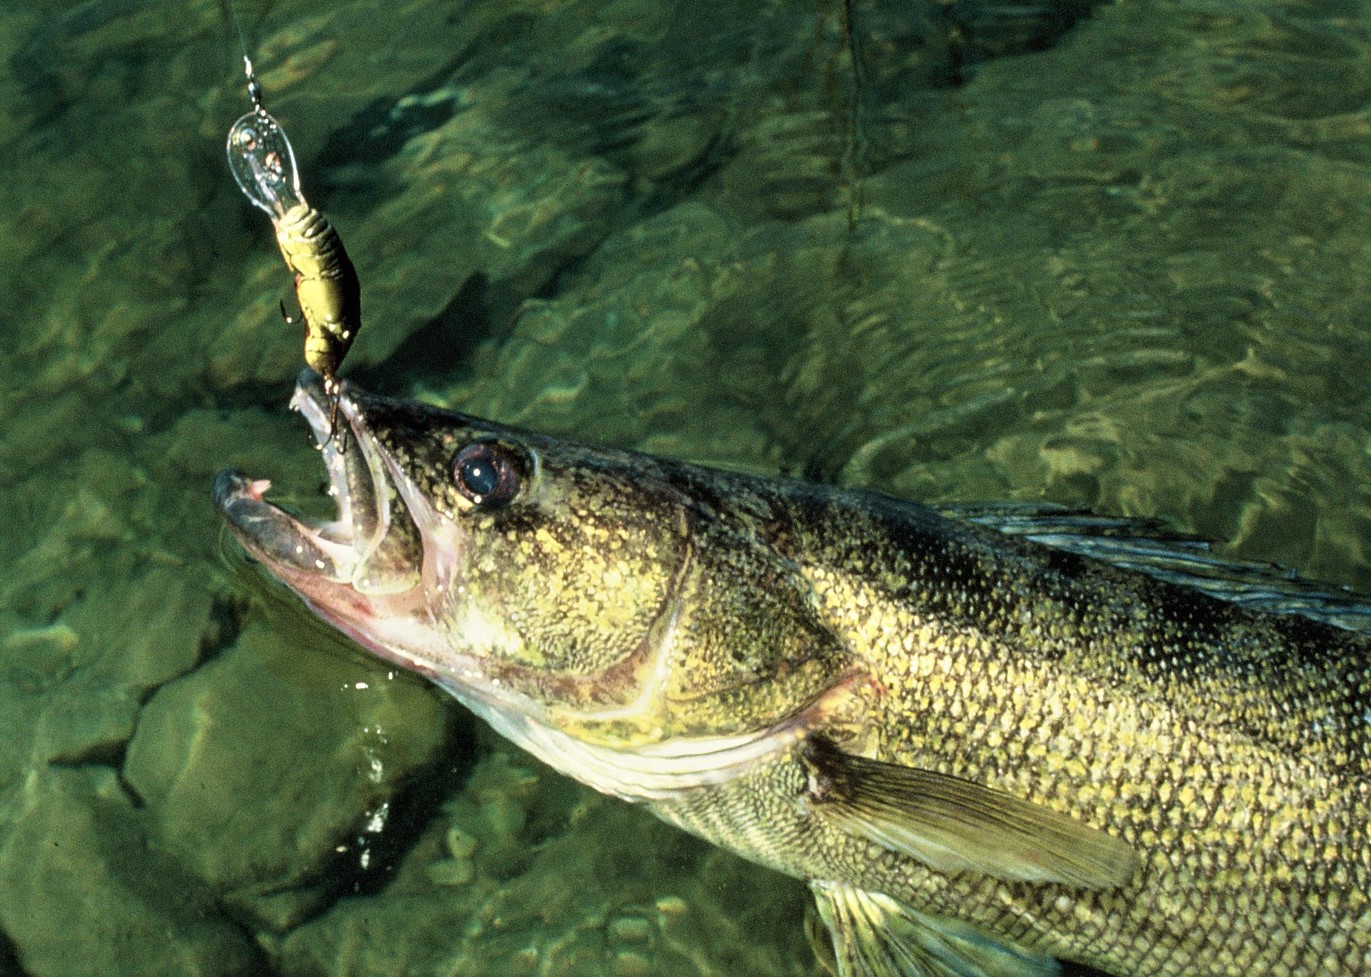 Walleye regulations on Minnesota Mille Lacs lake will allow walleye harvest